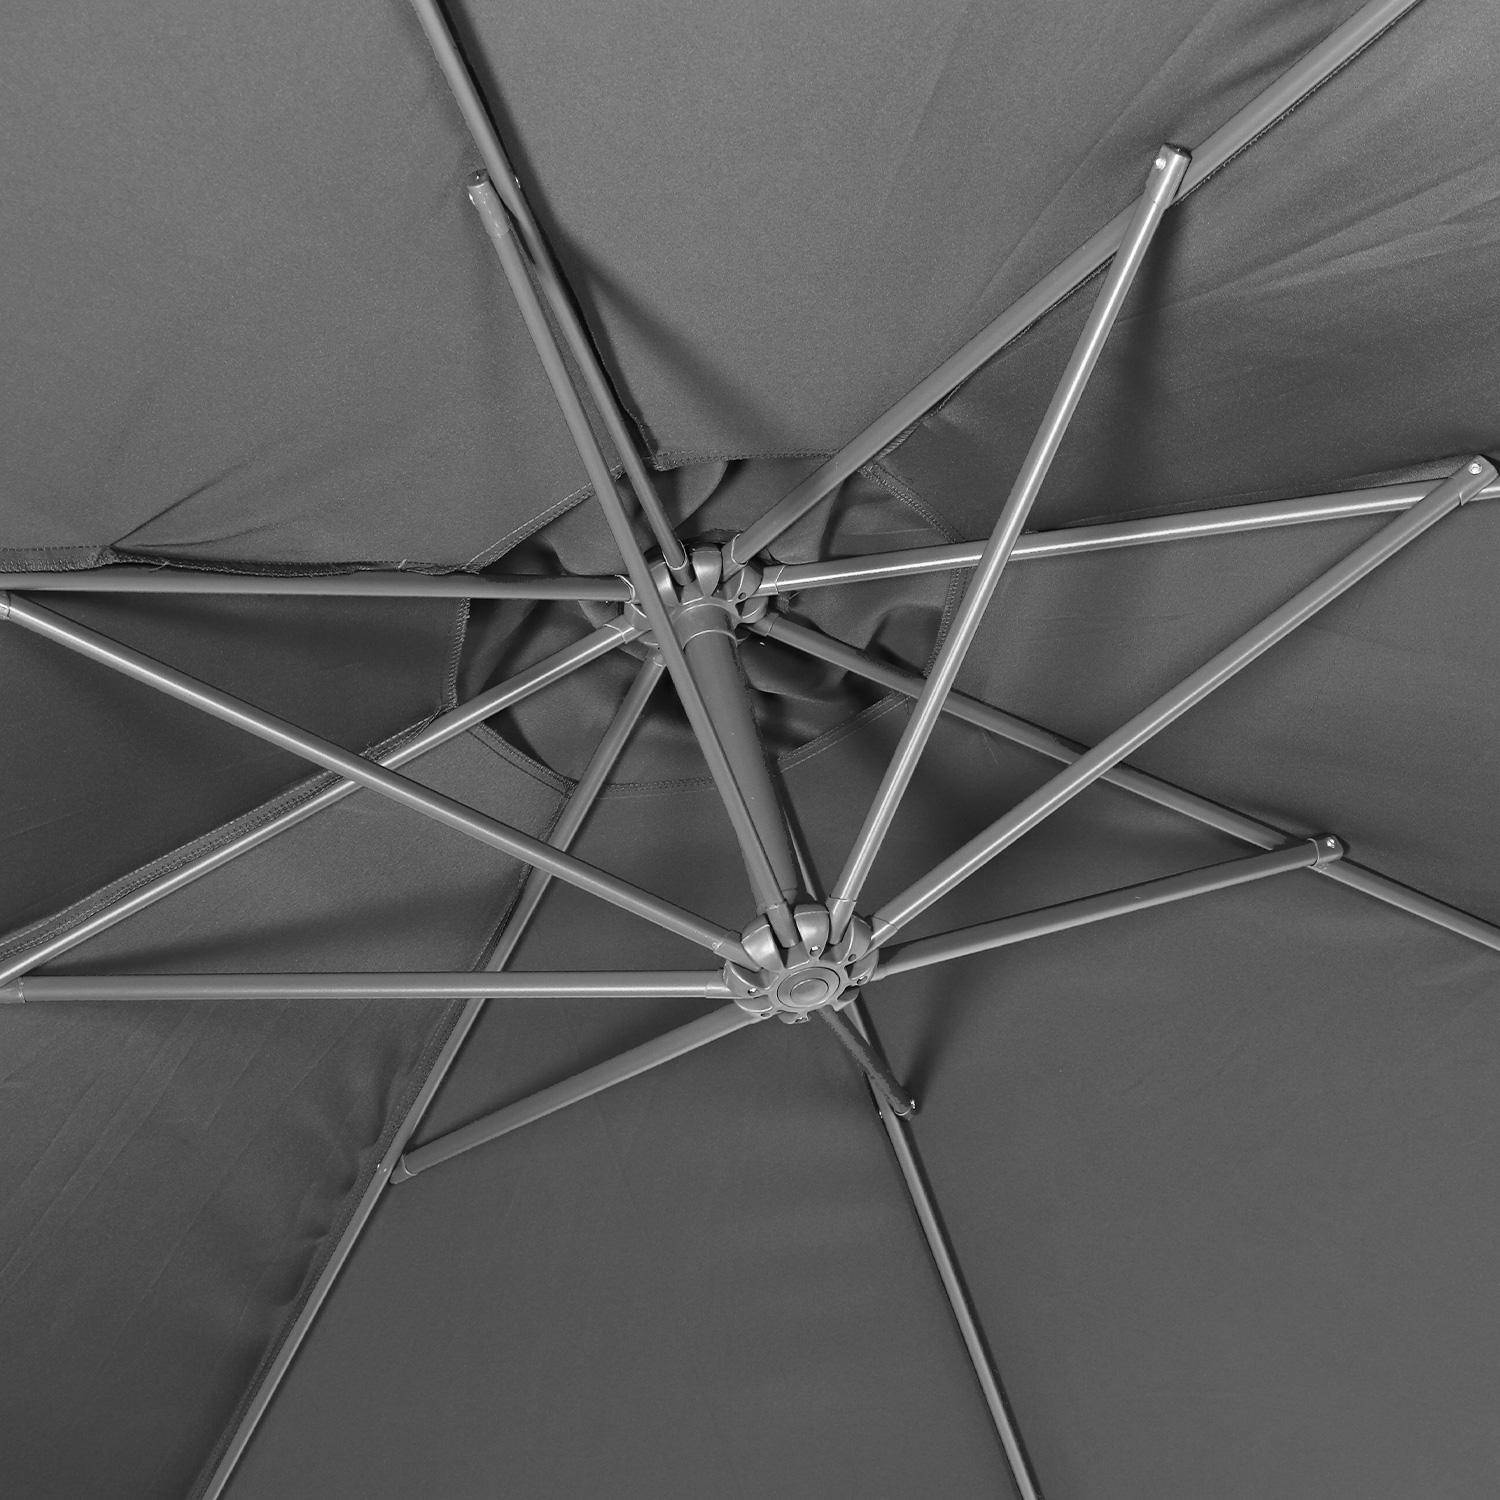 Ombrellone offset Ø350cm - Hardelot - Colore grigio, struttura antracite, manovella a scomparsa.,sweeek,Photo5